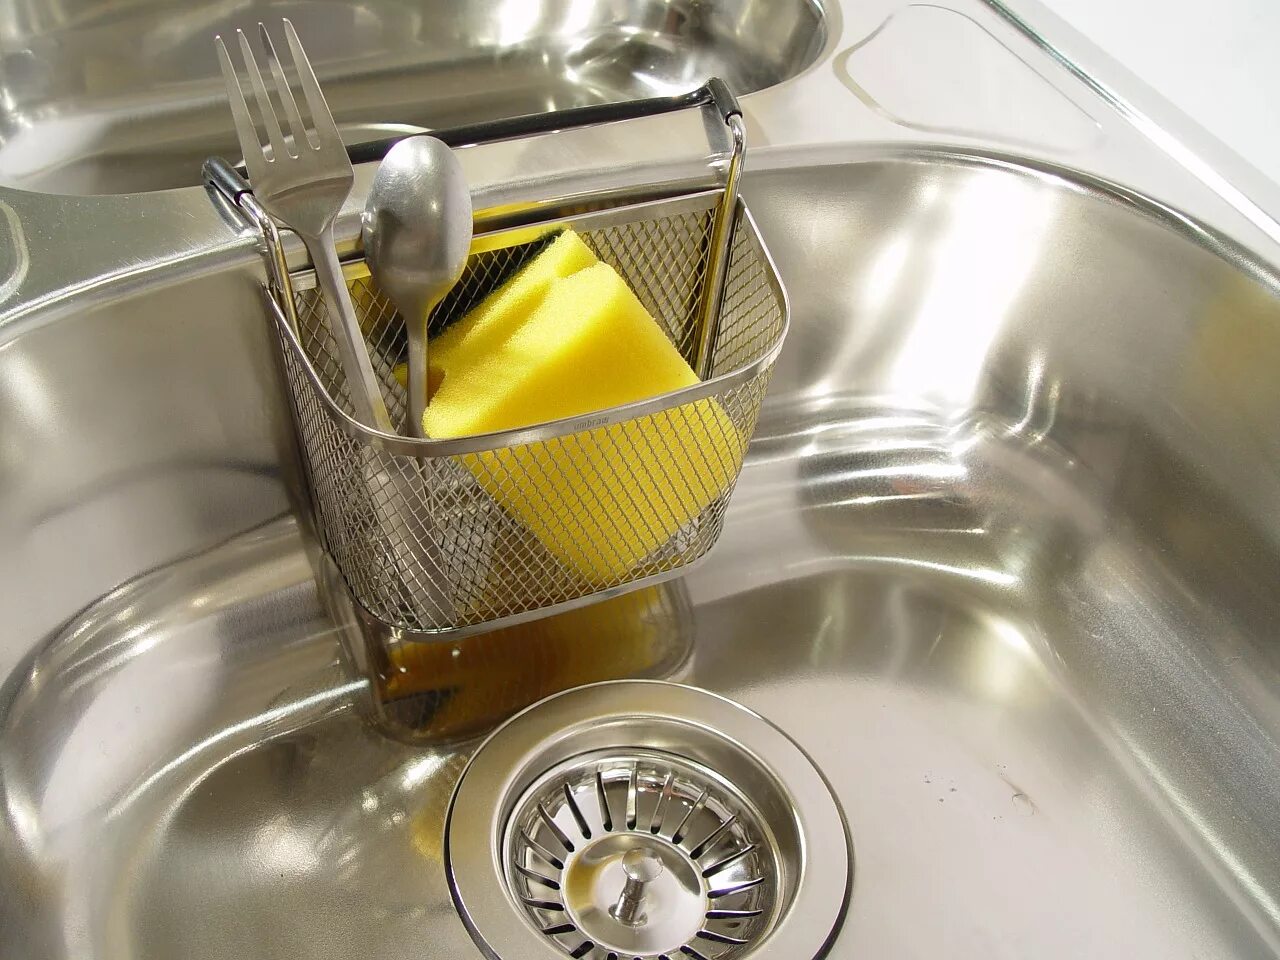 Мойка посуды. Раковина для мытья посуды. Moyka pasud. Мытье кухонной раковины.